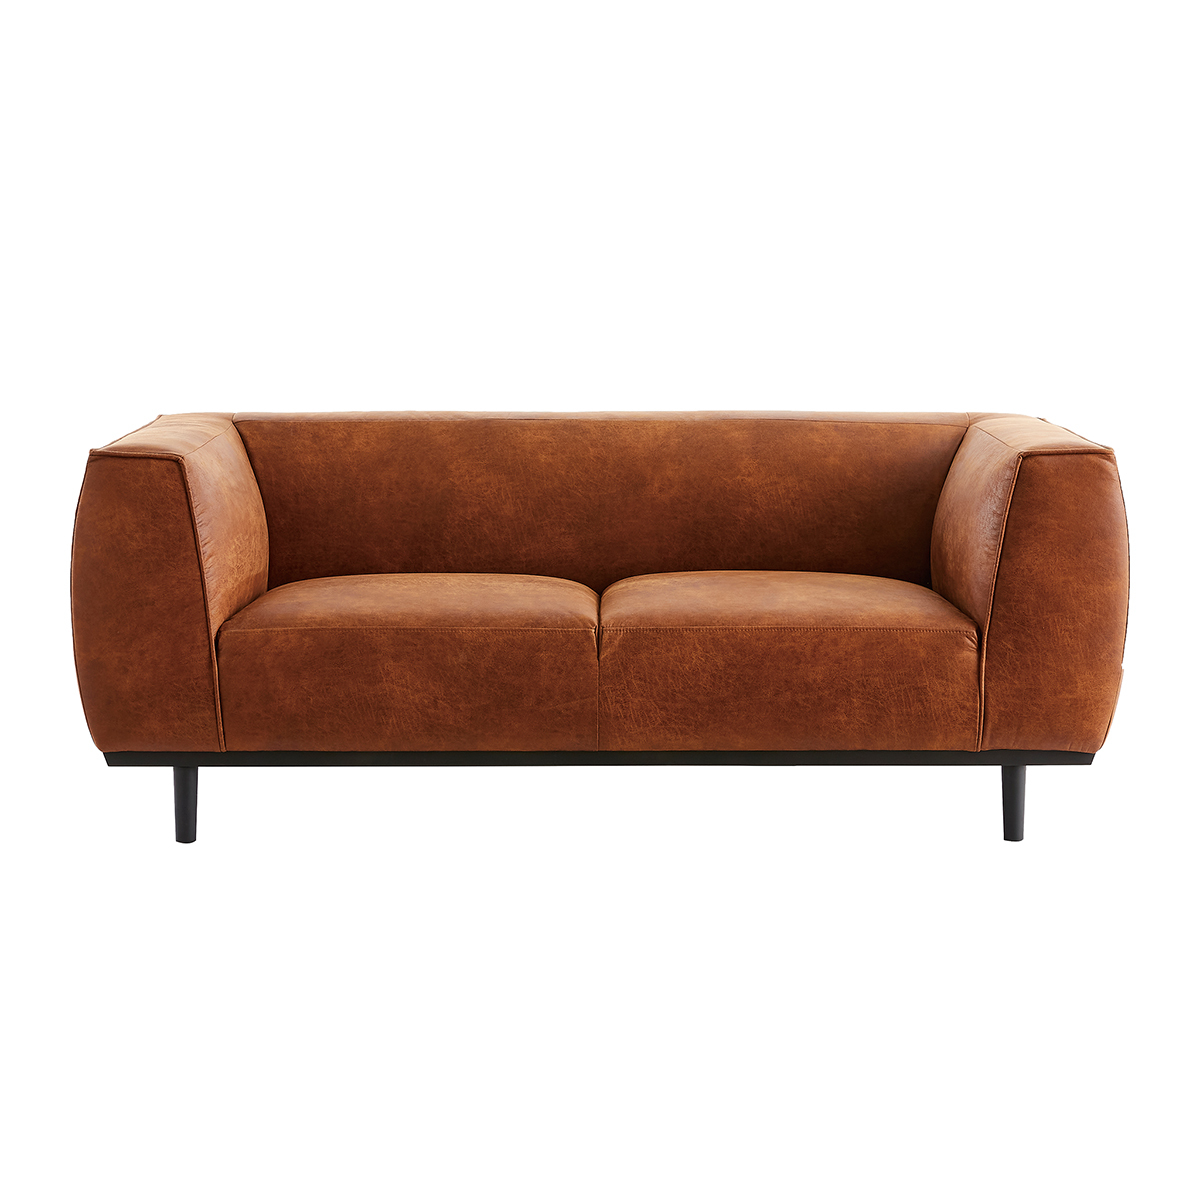 Canapé design en cuir aspect vieilli marron cognac 2-3 places MORRIS vue1